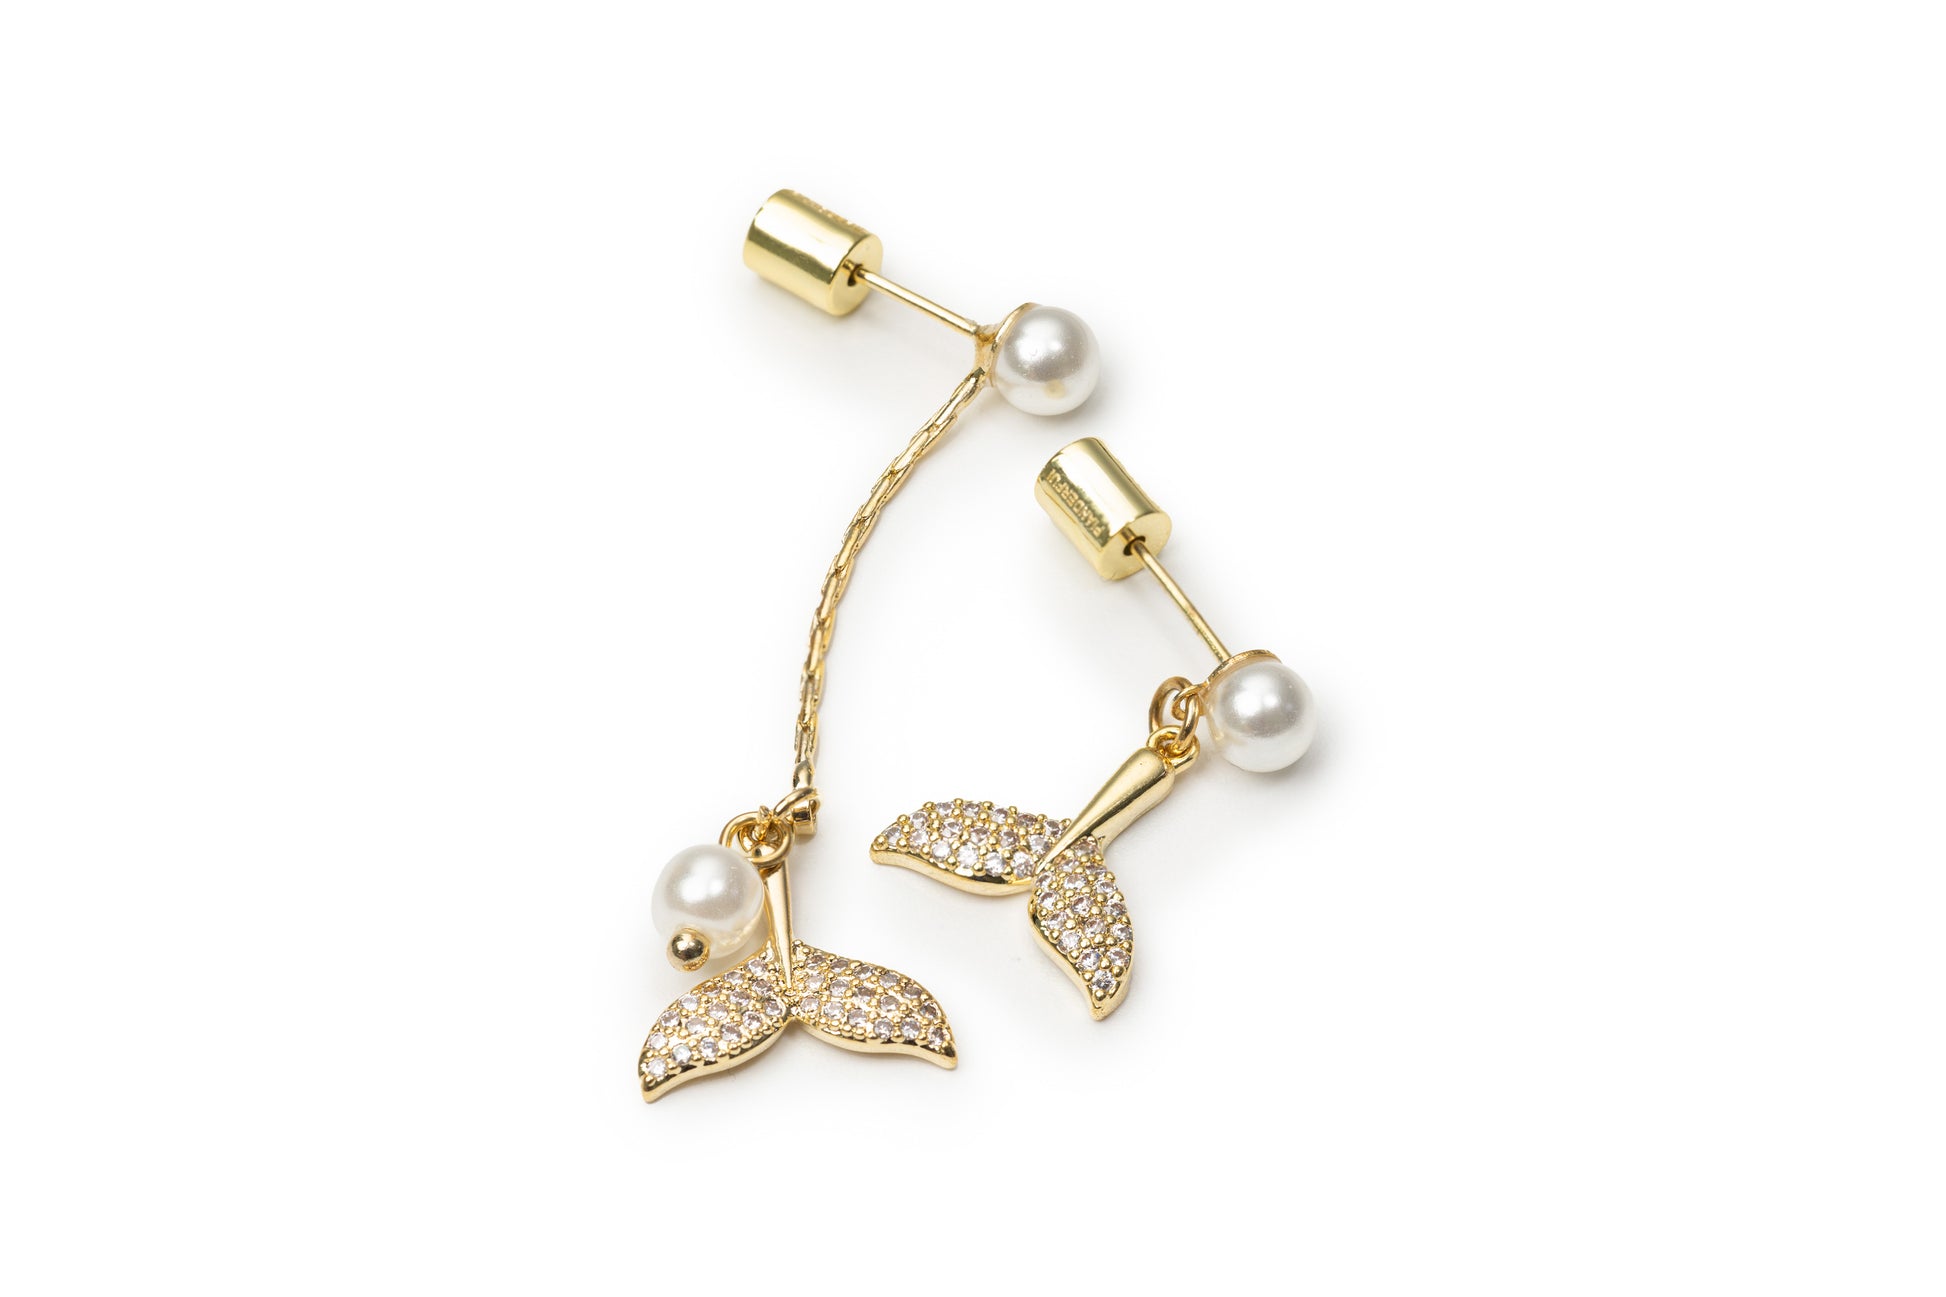 Planderful Mermaid Tail Drop Earrings - Golden Drop Earrings